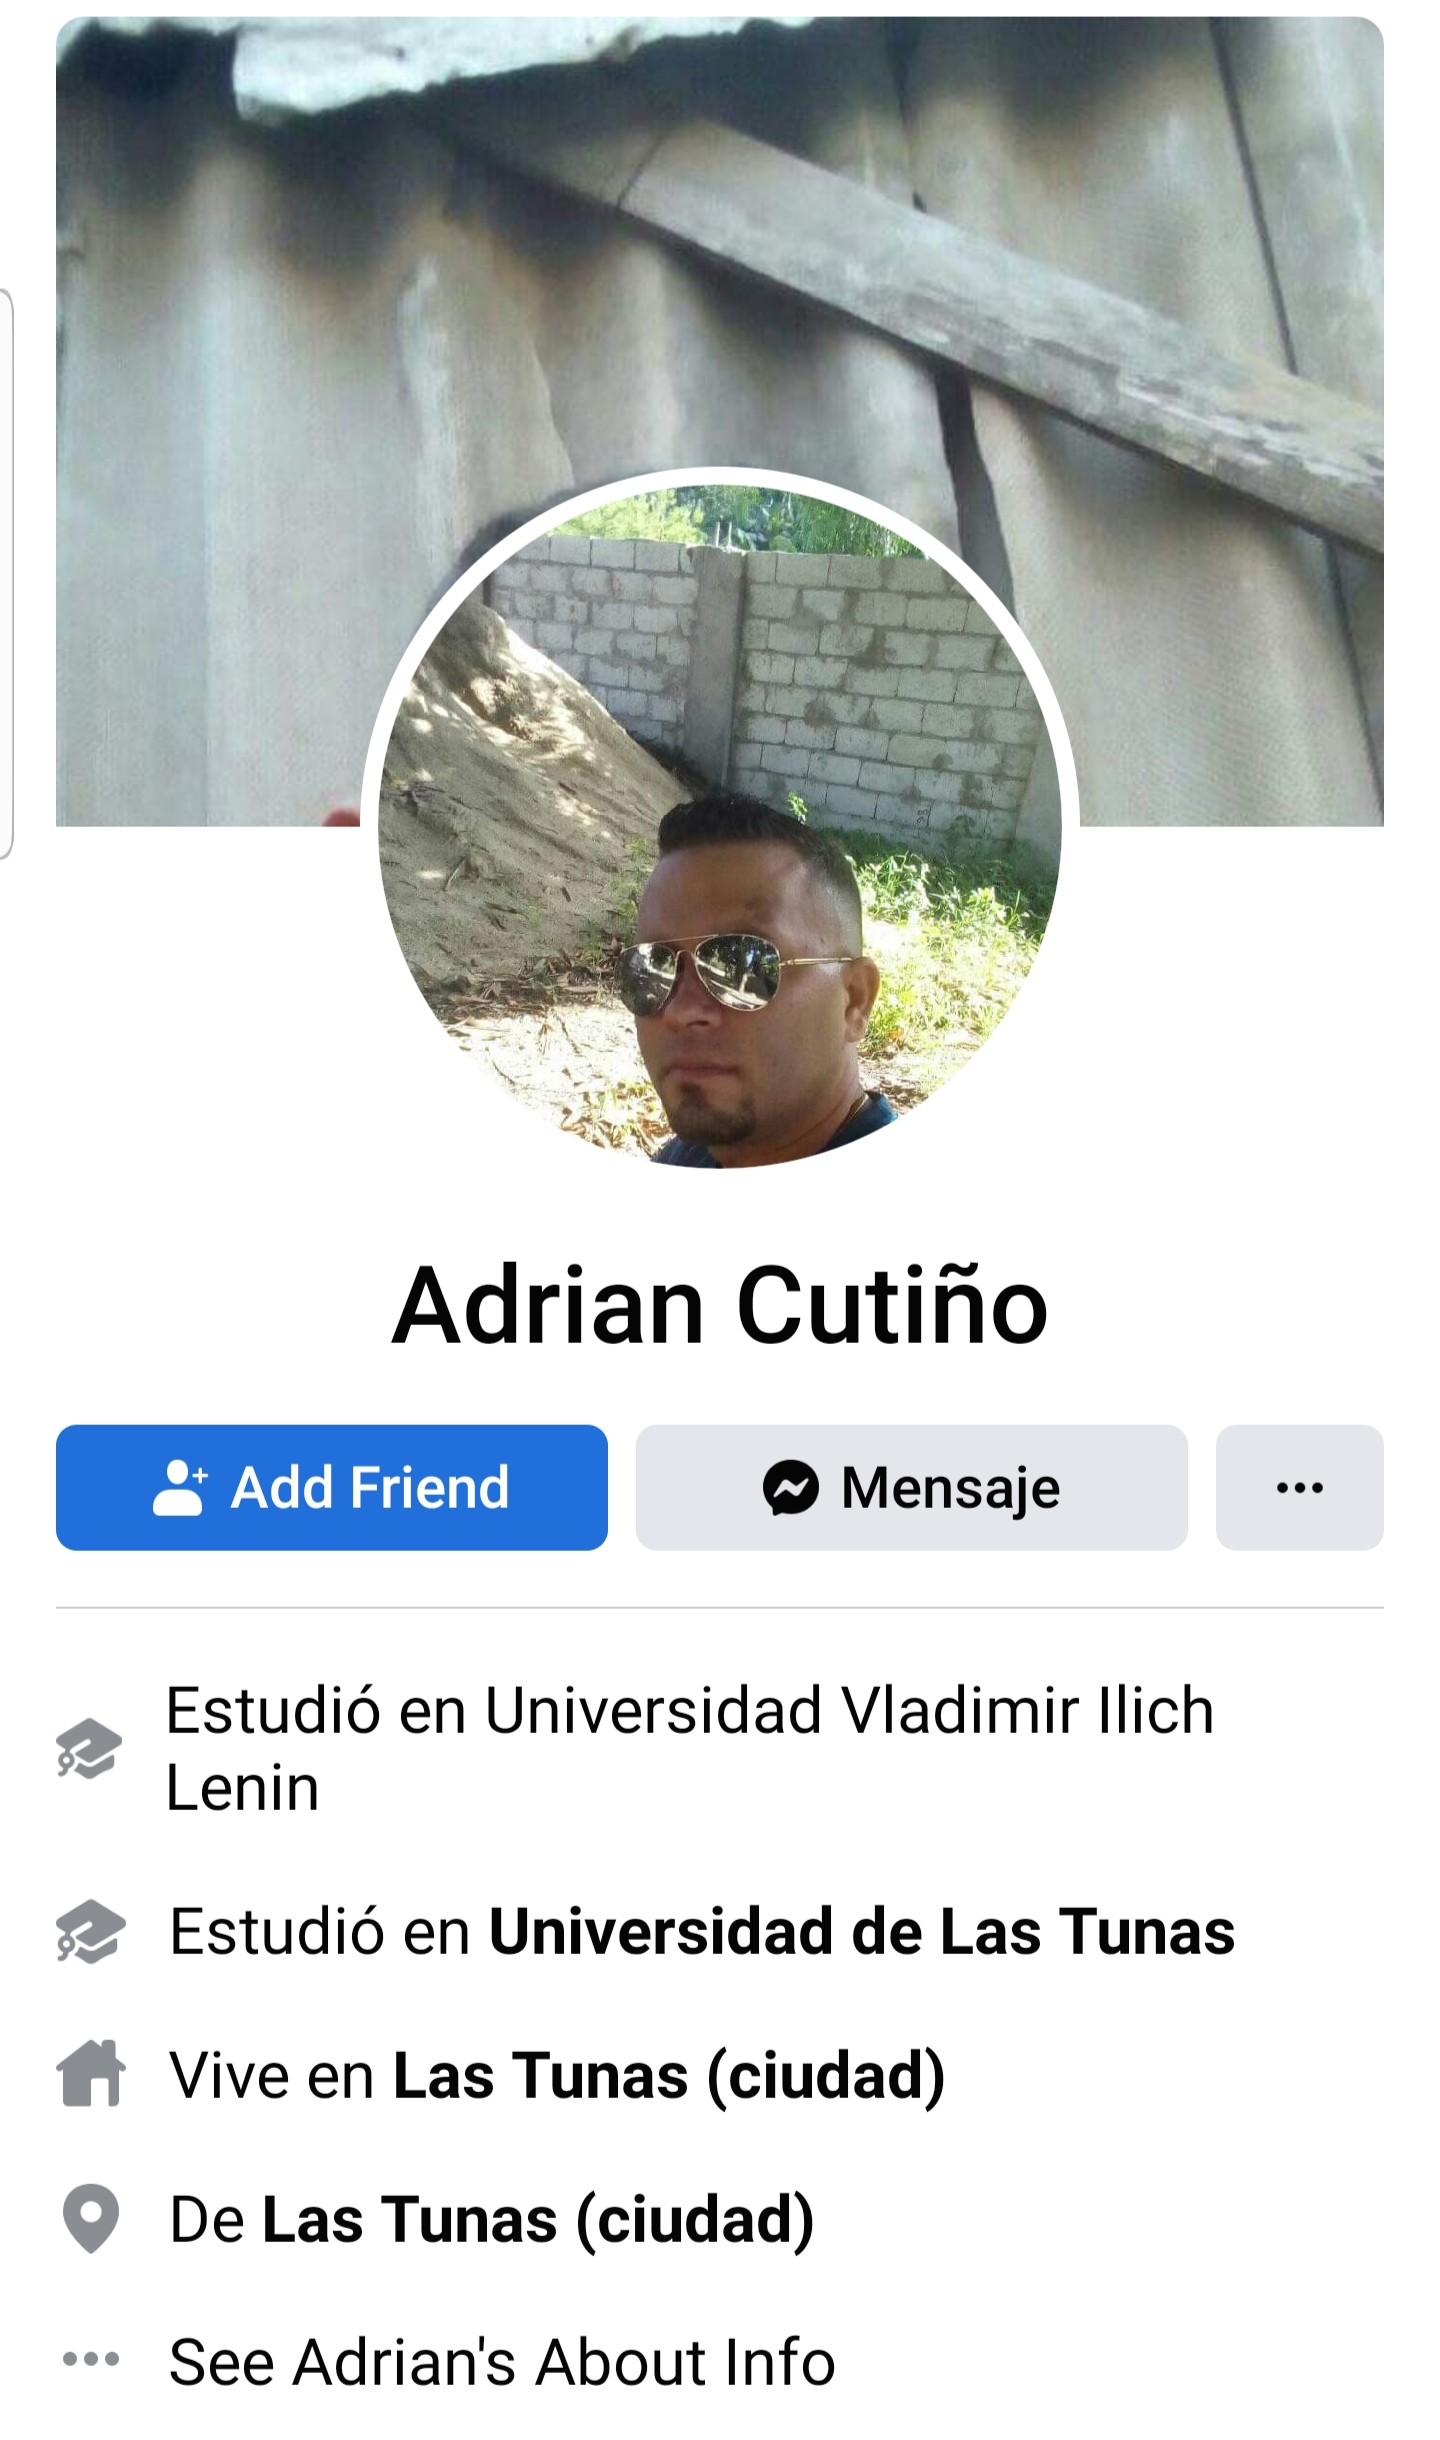 Adrián Cutiño